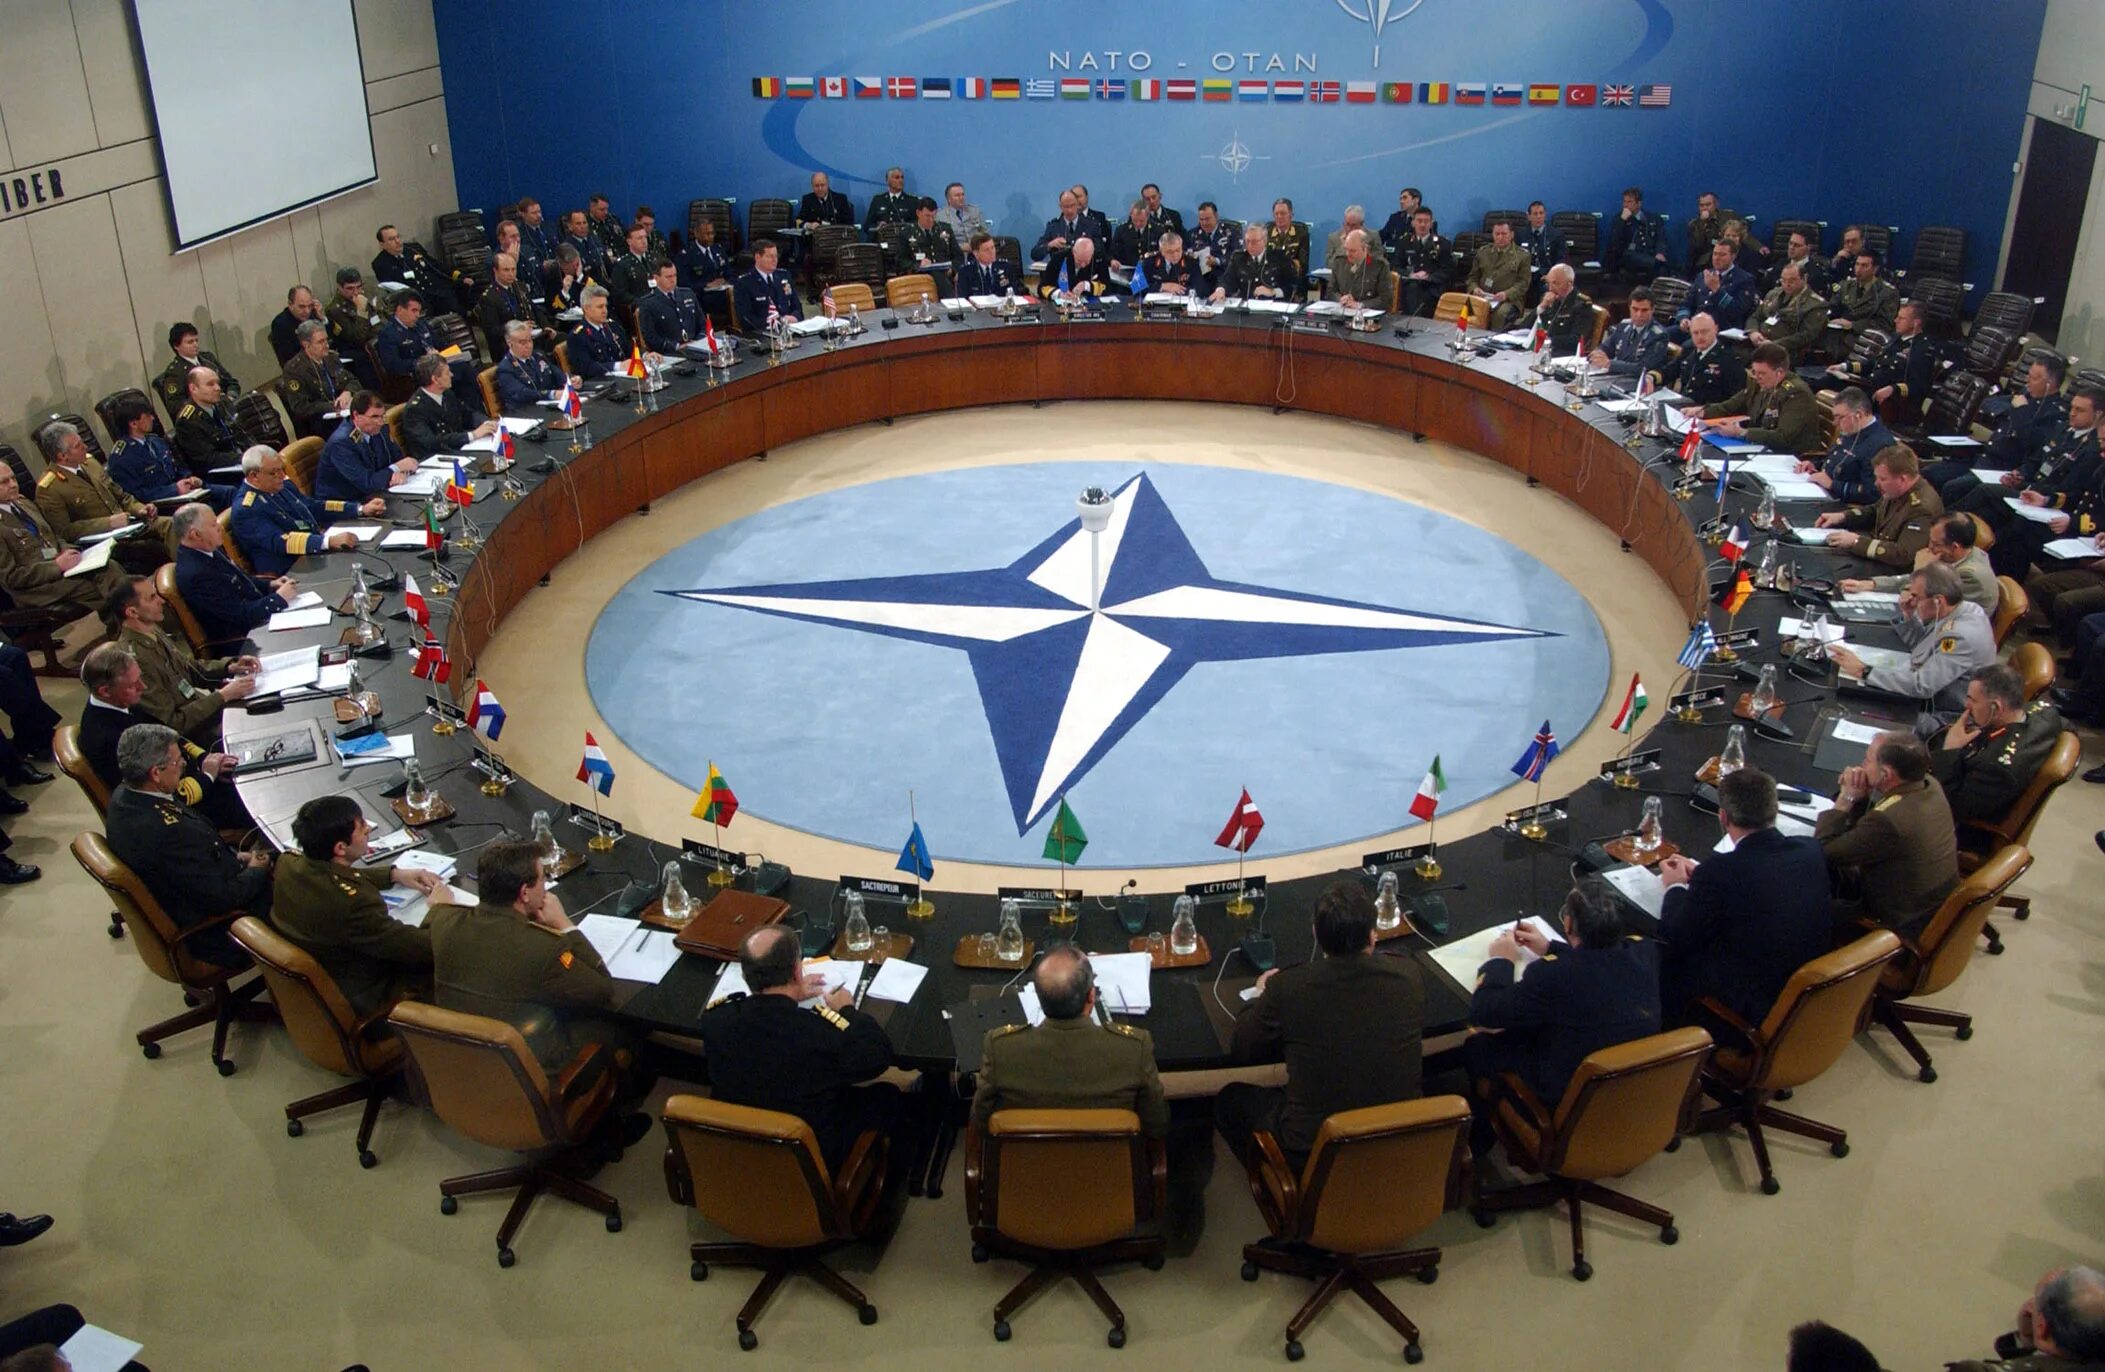 Североатлантический Альянс НАТО. НАТО North Atlantic Treaty Organization. Саммит НАТО В Мадриде. Образование Североатлантического Союза НАТО. Нато сообщение